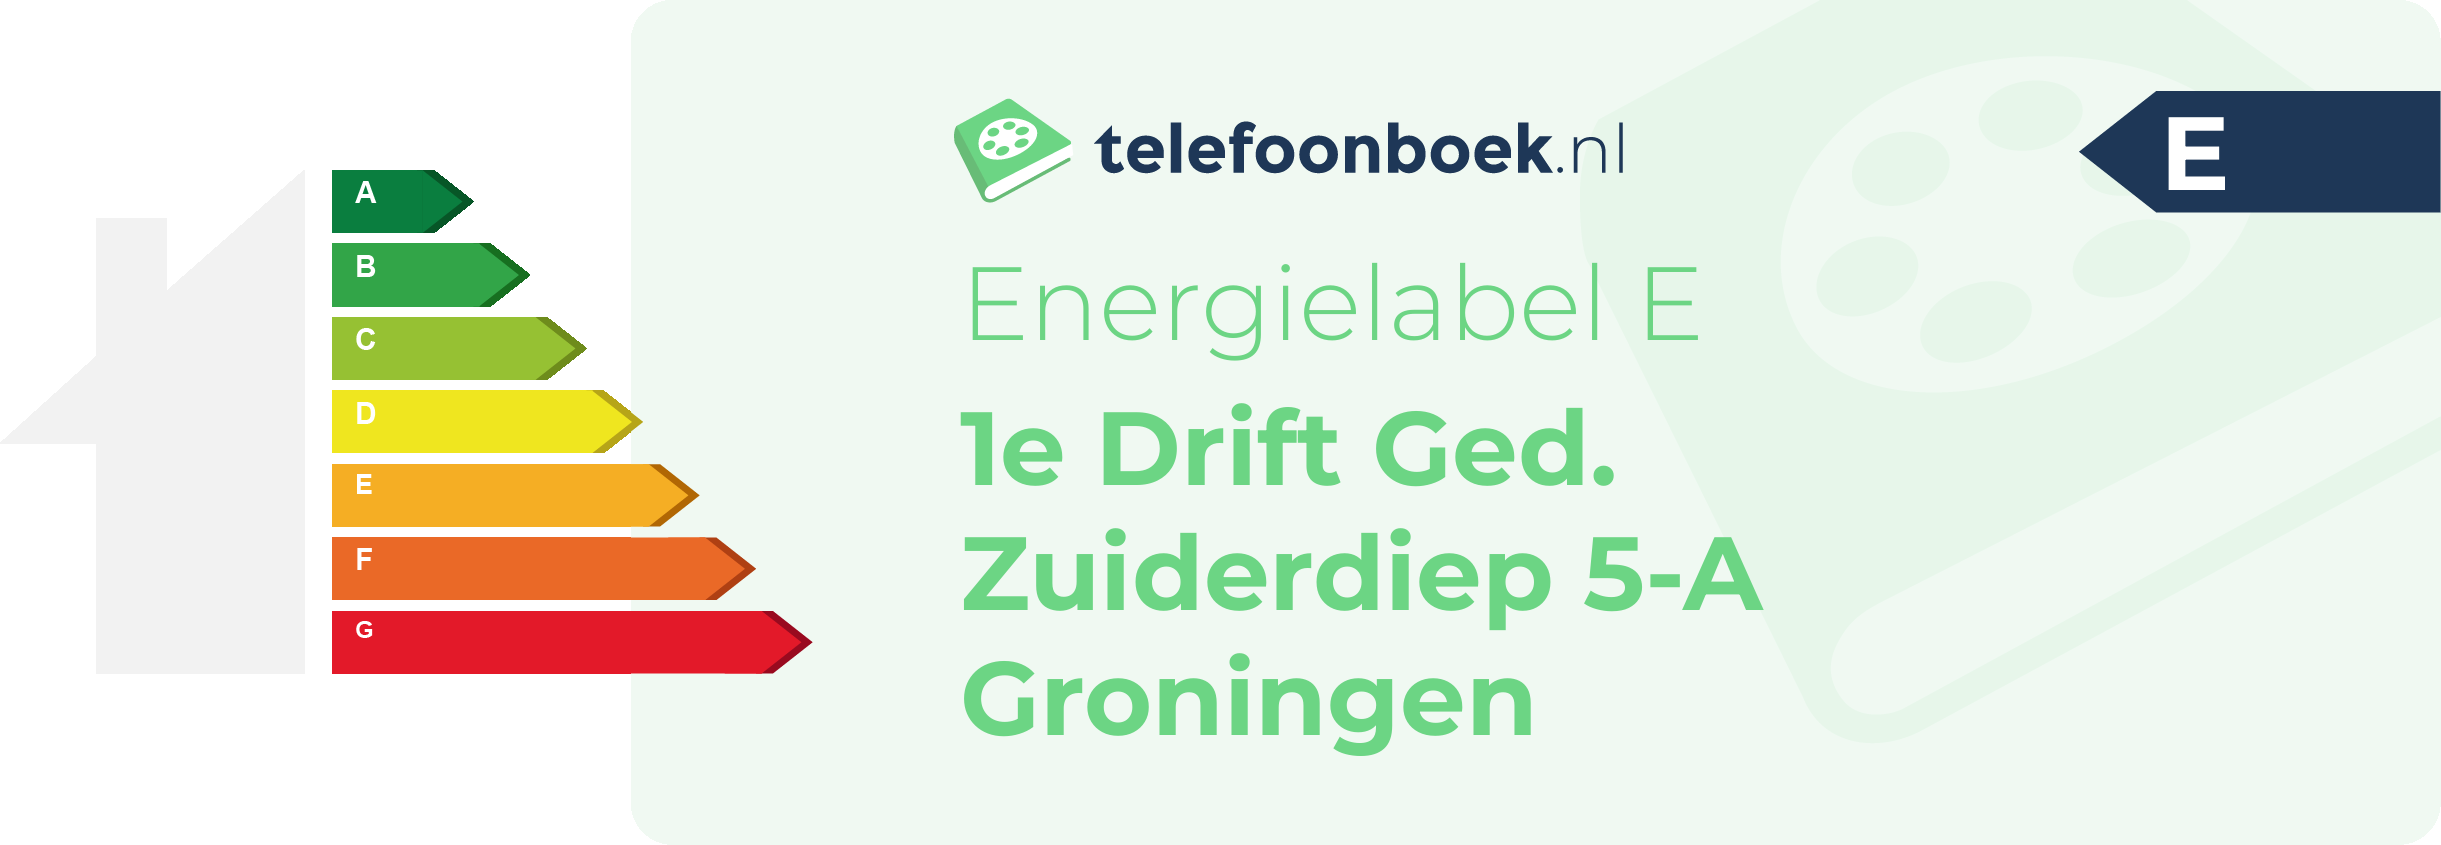 Energielabel 1e Drift Ged. Zuiderdiep 5-A Groningen